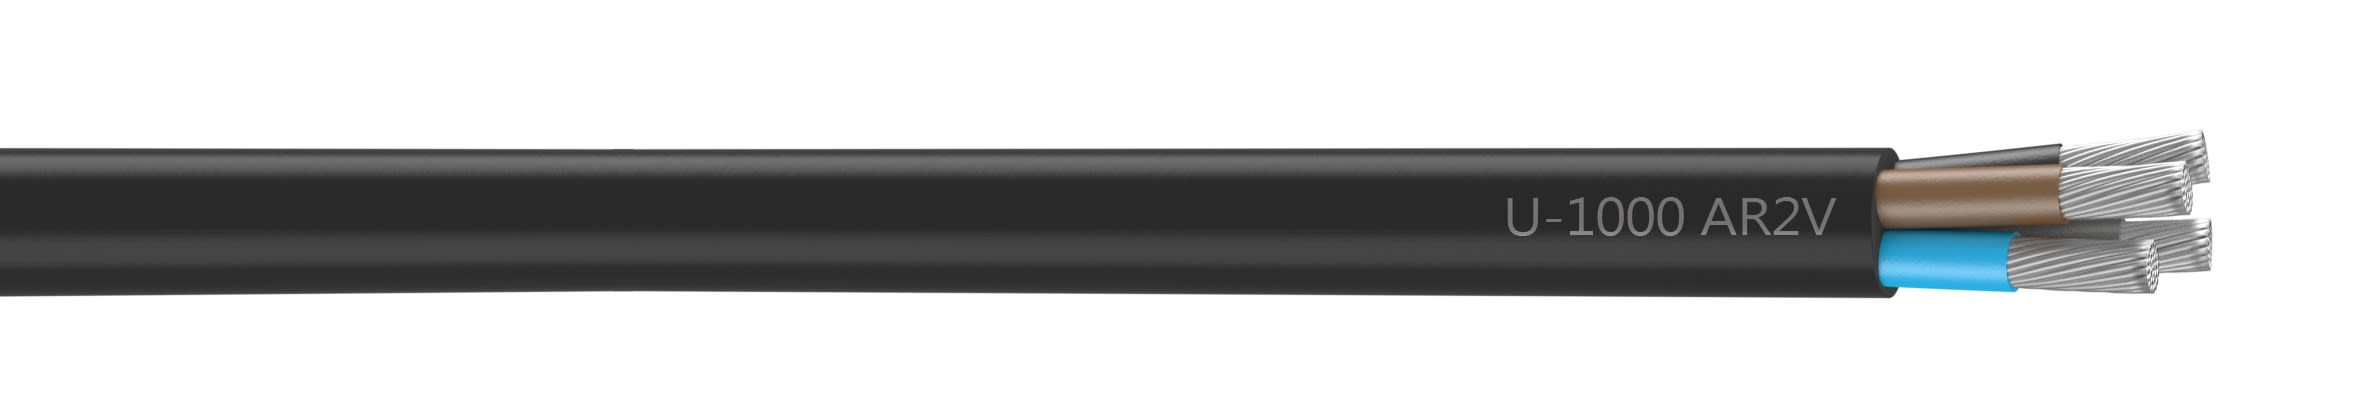 Nexans - Câble rigide U-1000 AR2V aluminium 4x35 longueur à la coupe